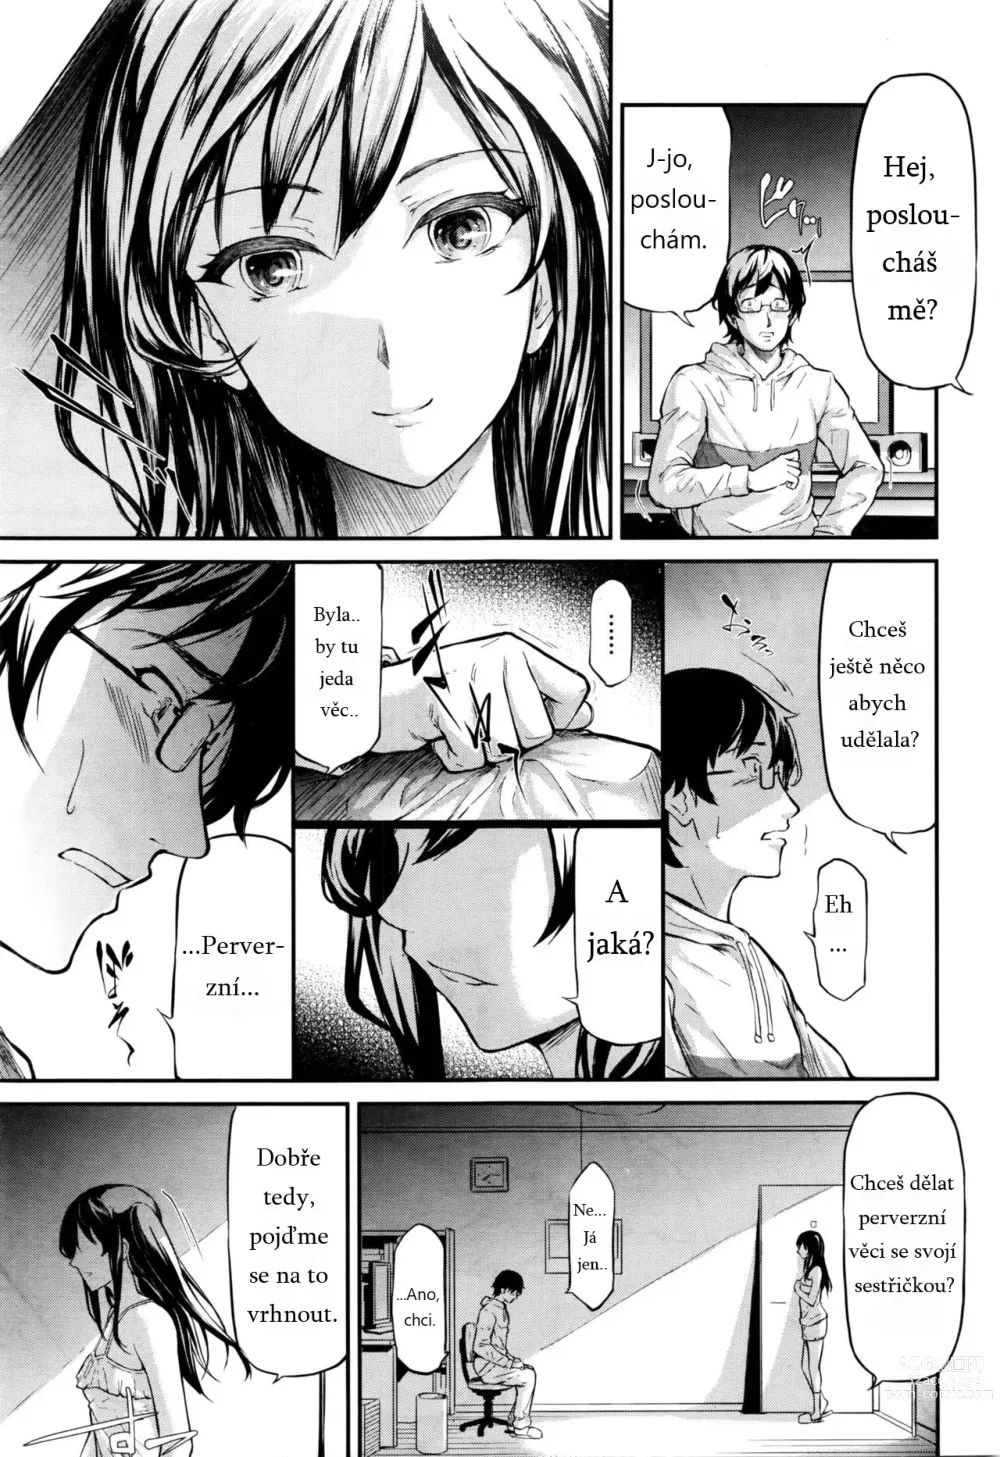 Page 5 of manga Lies